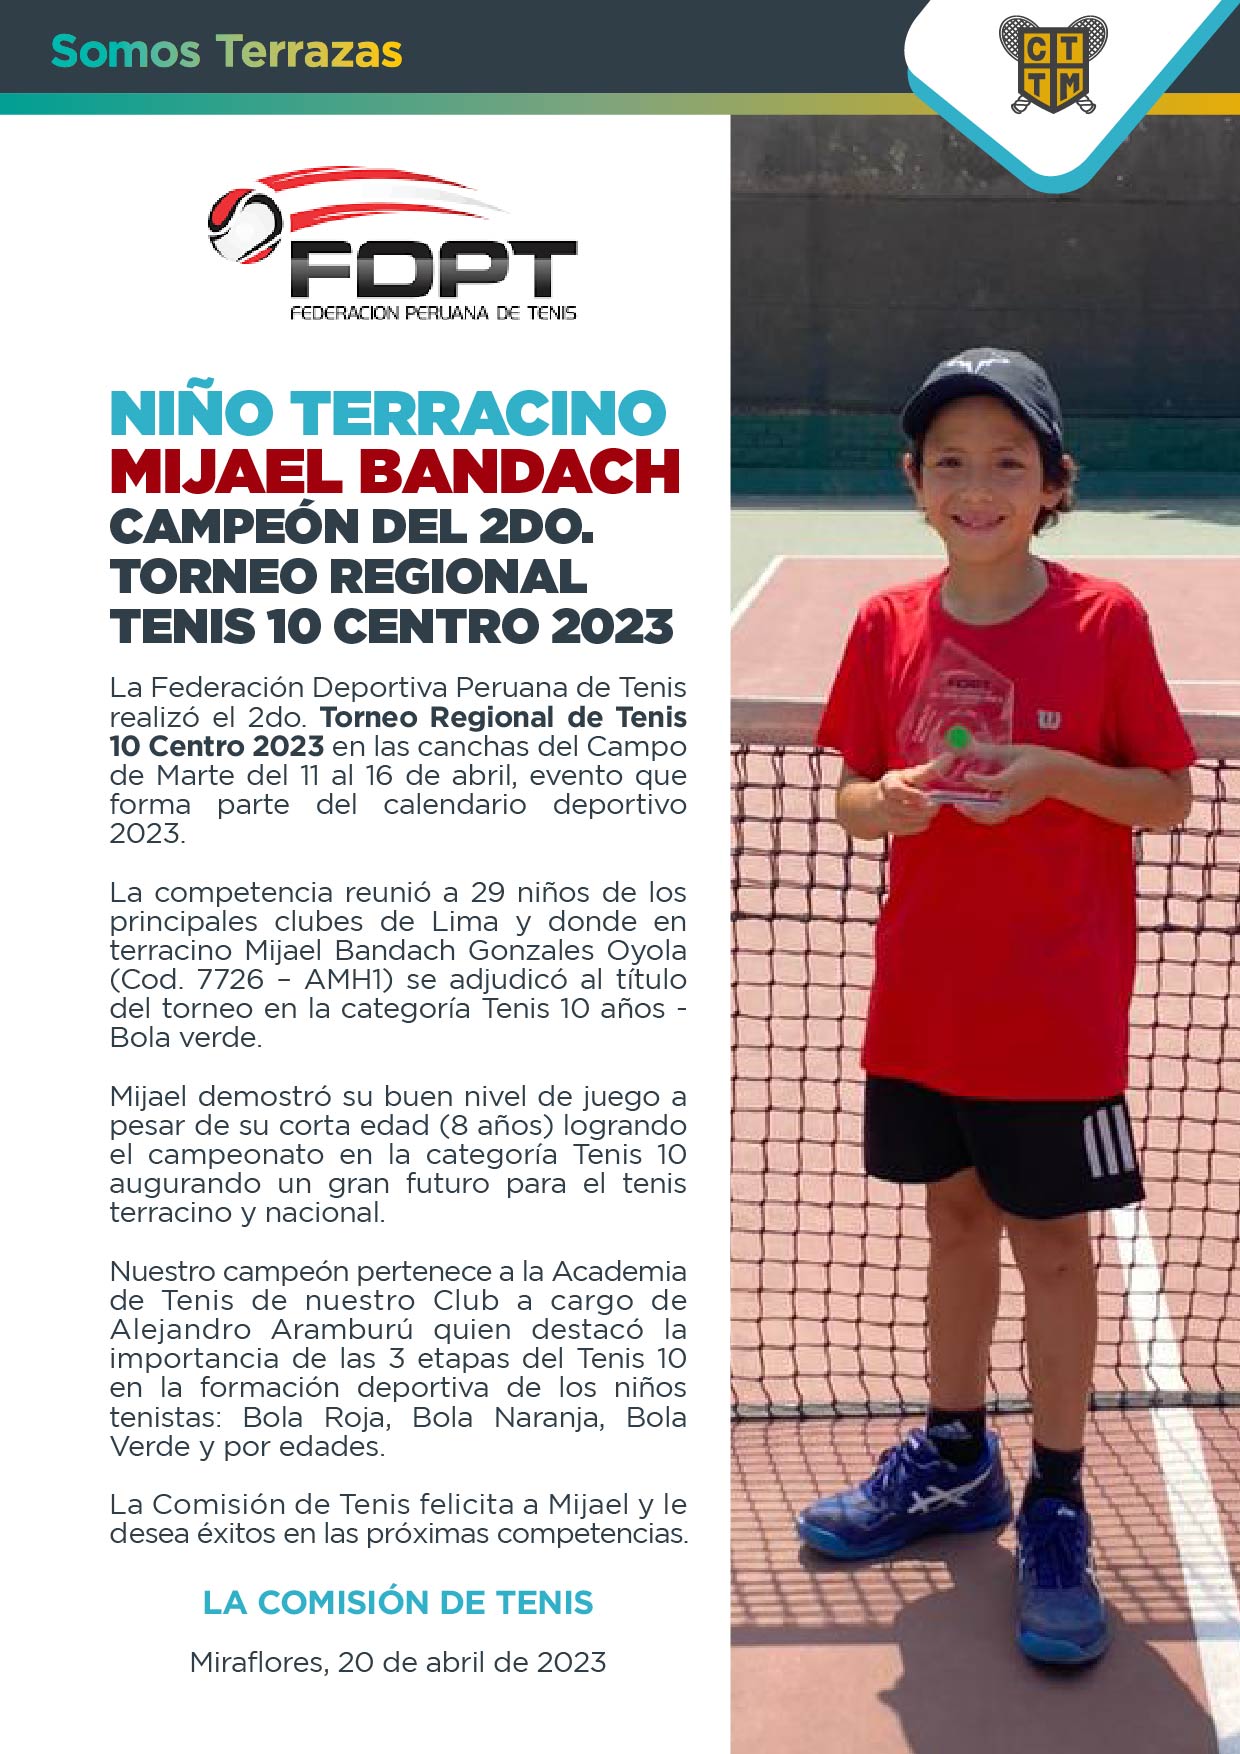 NIÑO TERRACINO MIJAEL BANDACH: CAMPEÓN DEL 2DO. TORNEO REGIONAL TENIS 10 CENTRO 2023